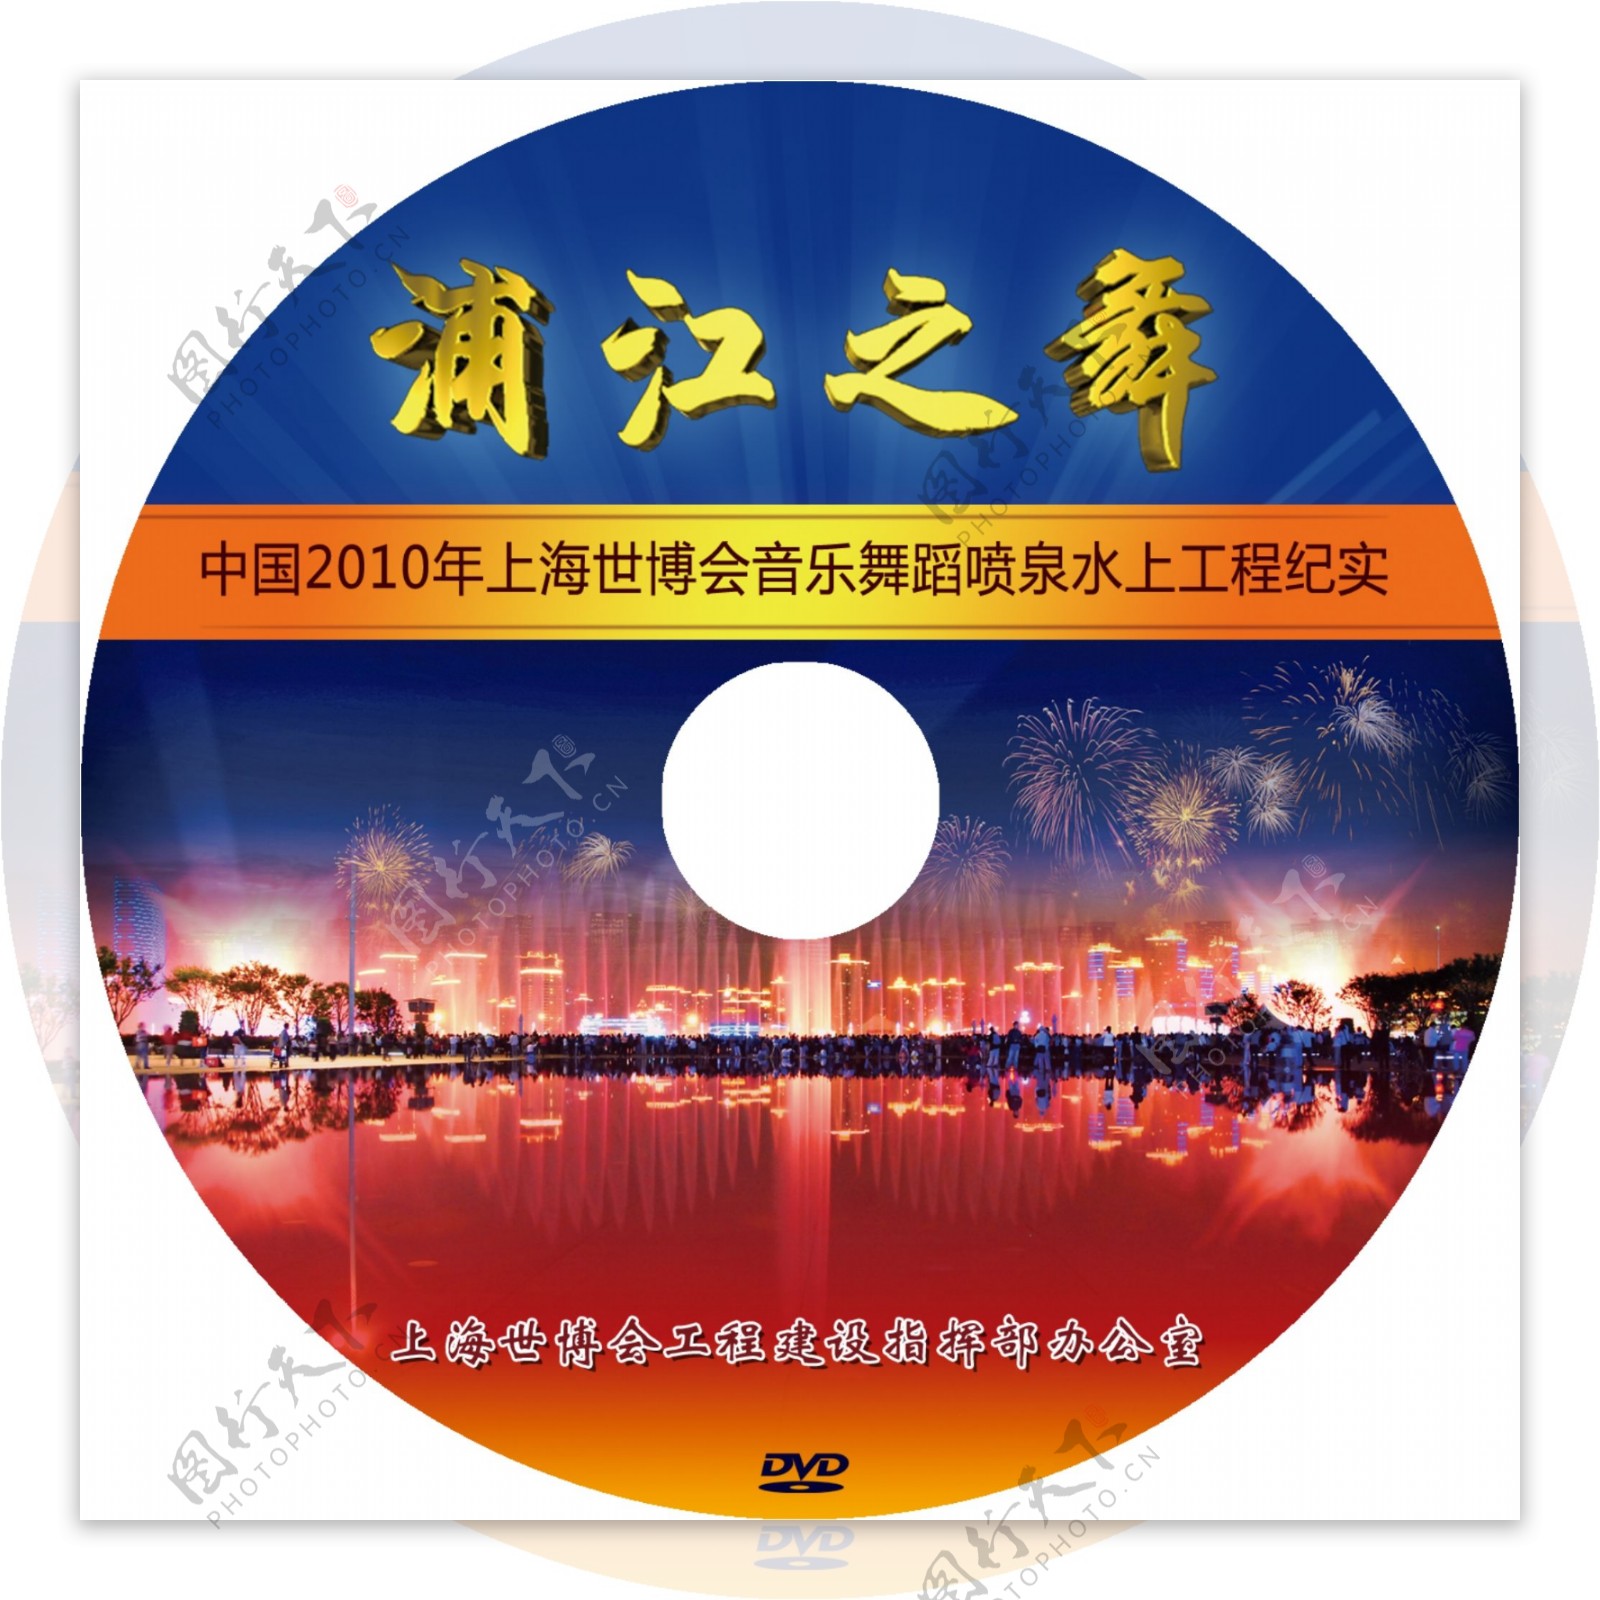 浦江之舞dvd盘面图片